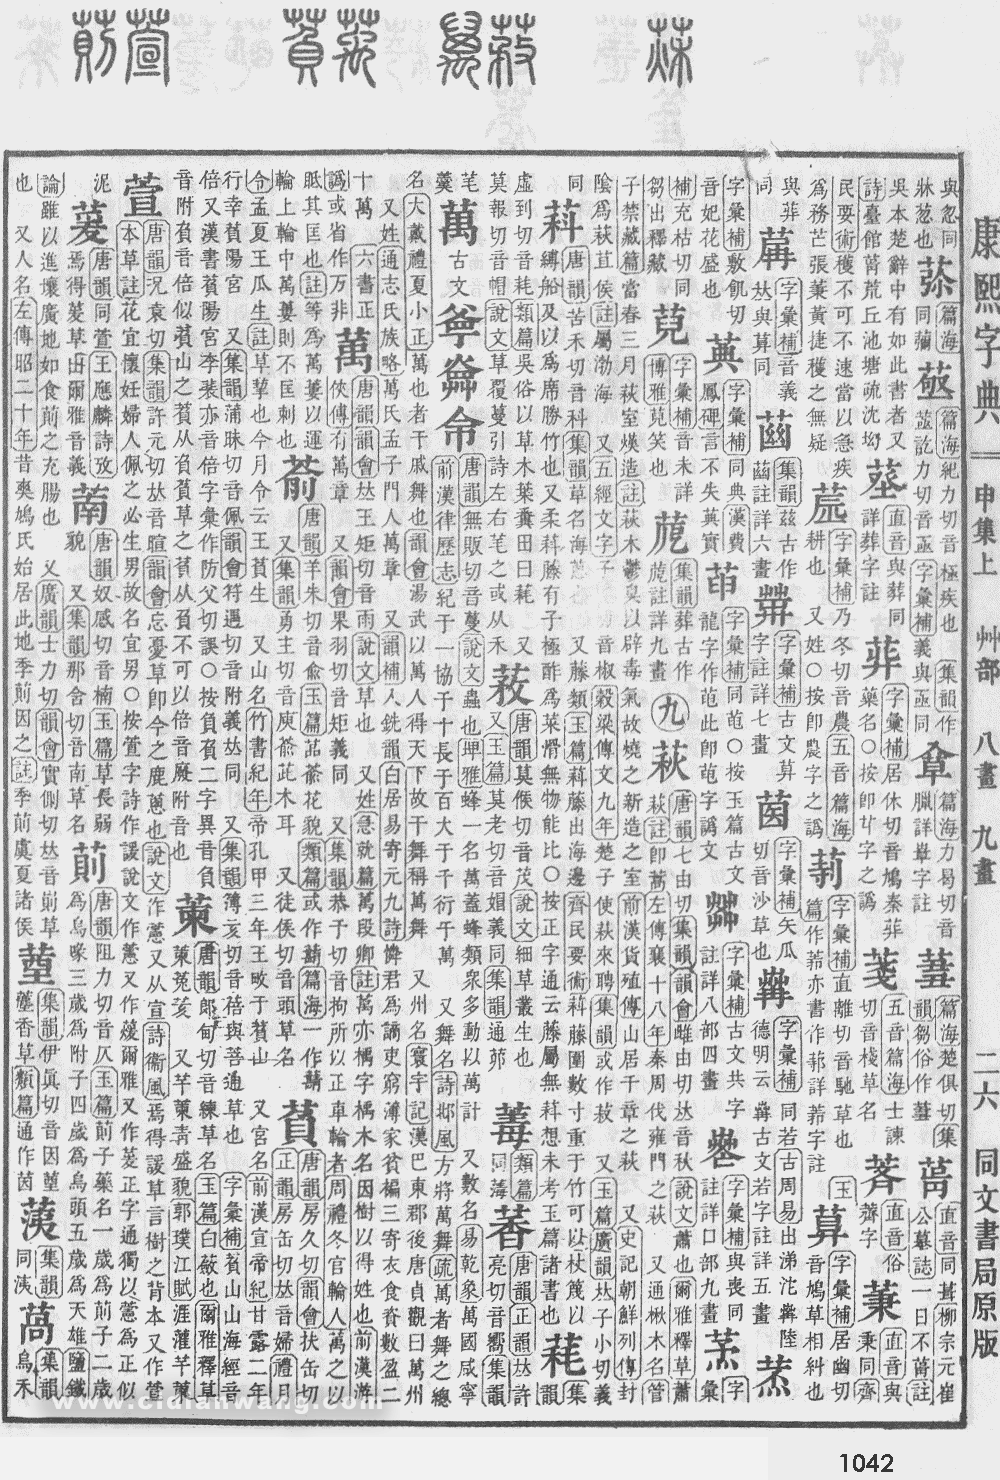 康熙字典掃描版第1042頁